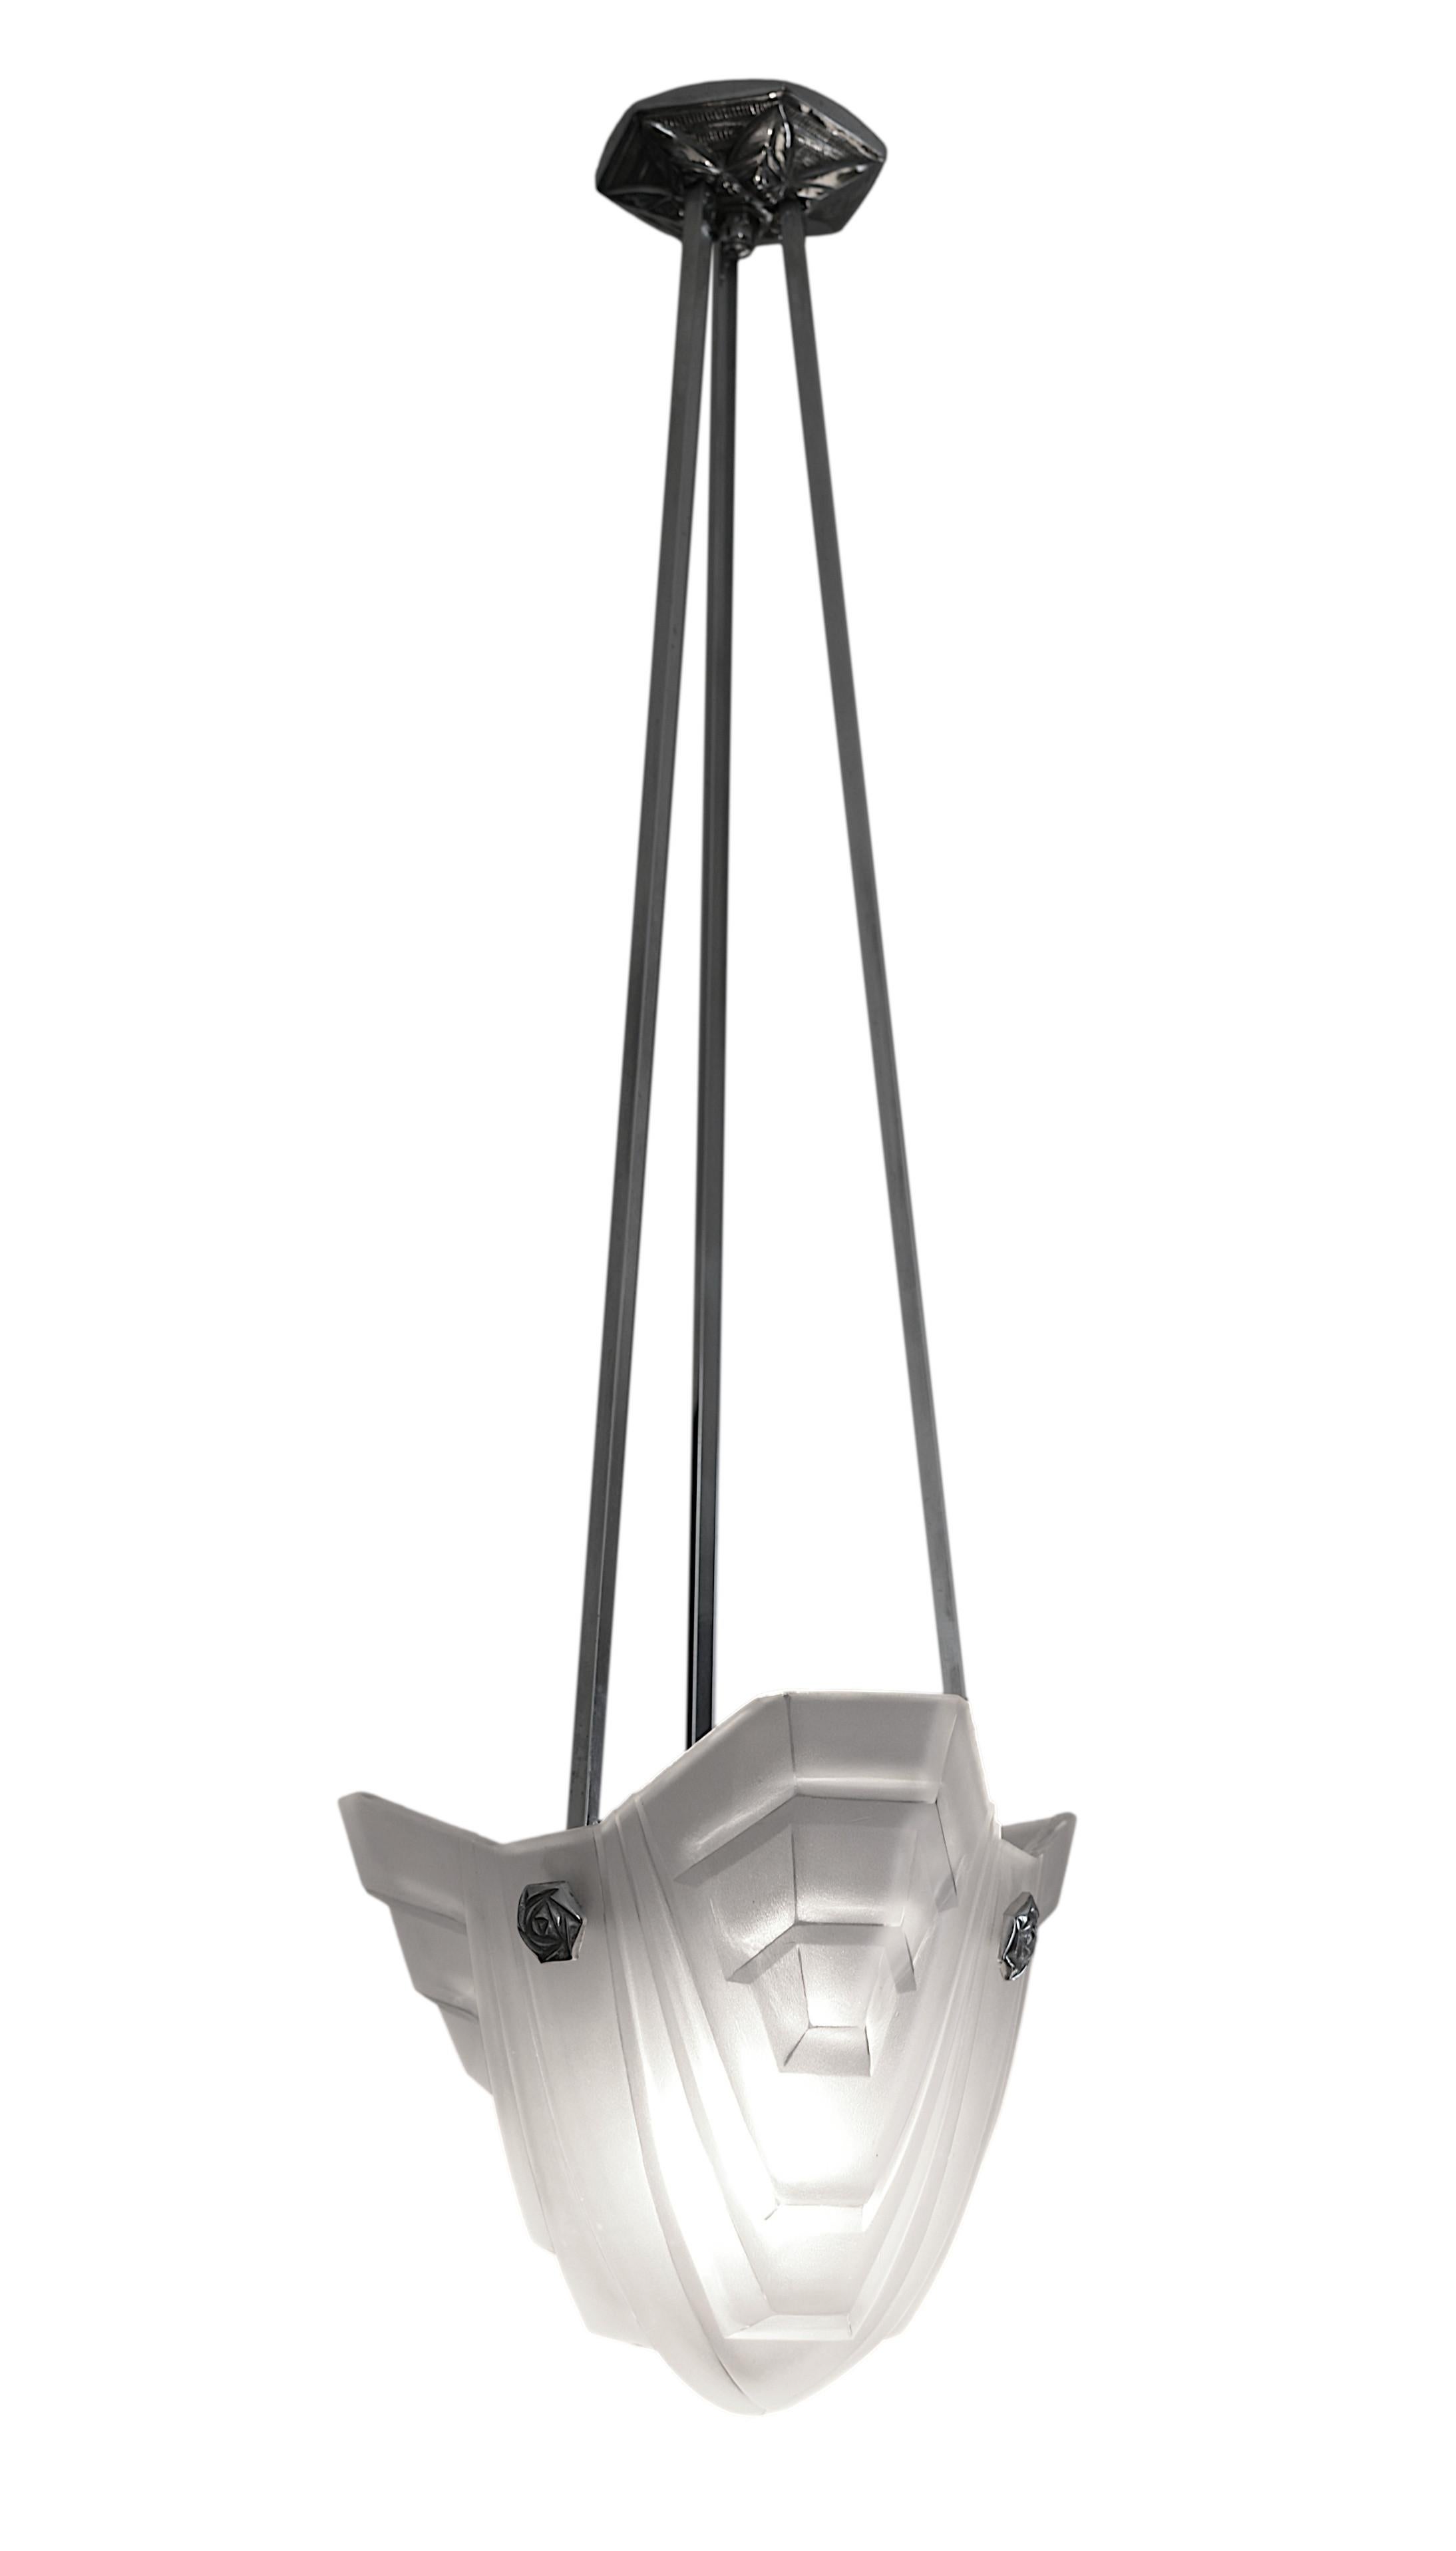 Französischer Art-Déco-Hängeleuchter von DEGUE (Compiegne), Frankreich, Ende der 1920er Jahre. Dicker Lampenschirm aus weißem Milchglas mit stilisiertem Art-Déco-Muster. Vernickelter Metallrahmen. Höhe: 31